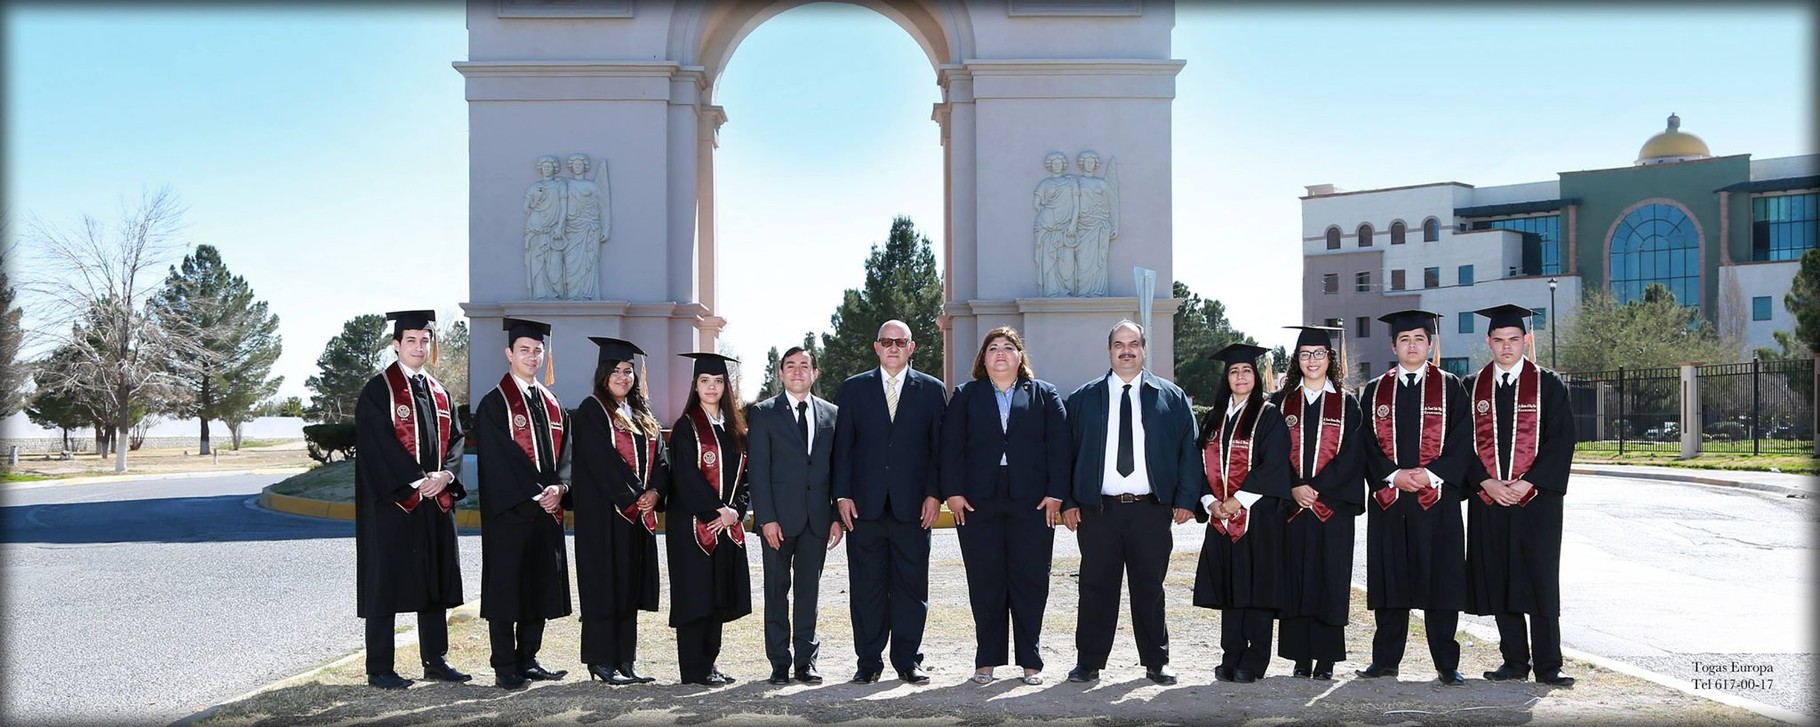 Graduados de la Licenciatura en Economía de la UACJ, 2015.